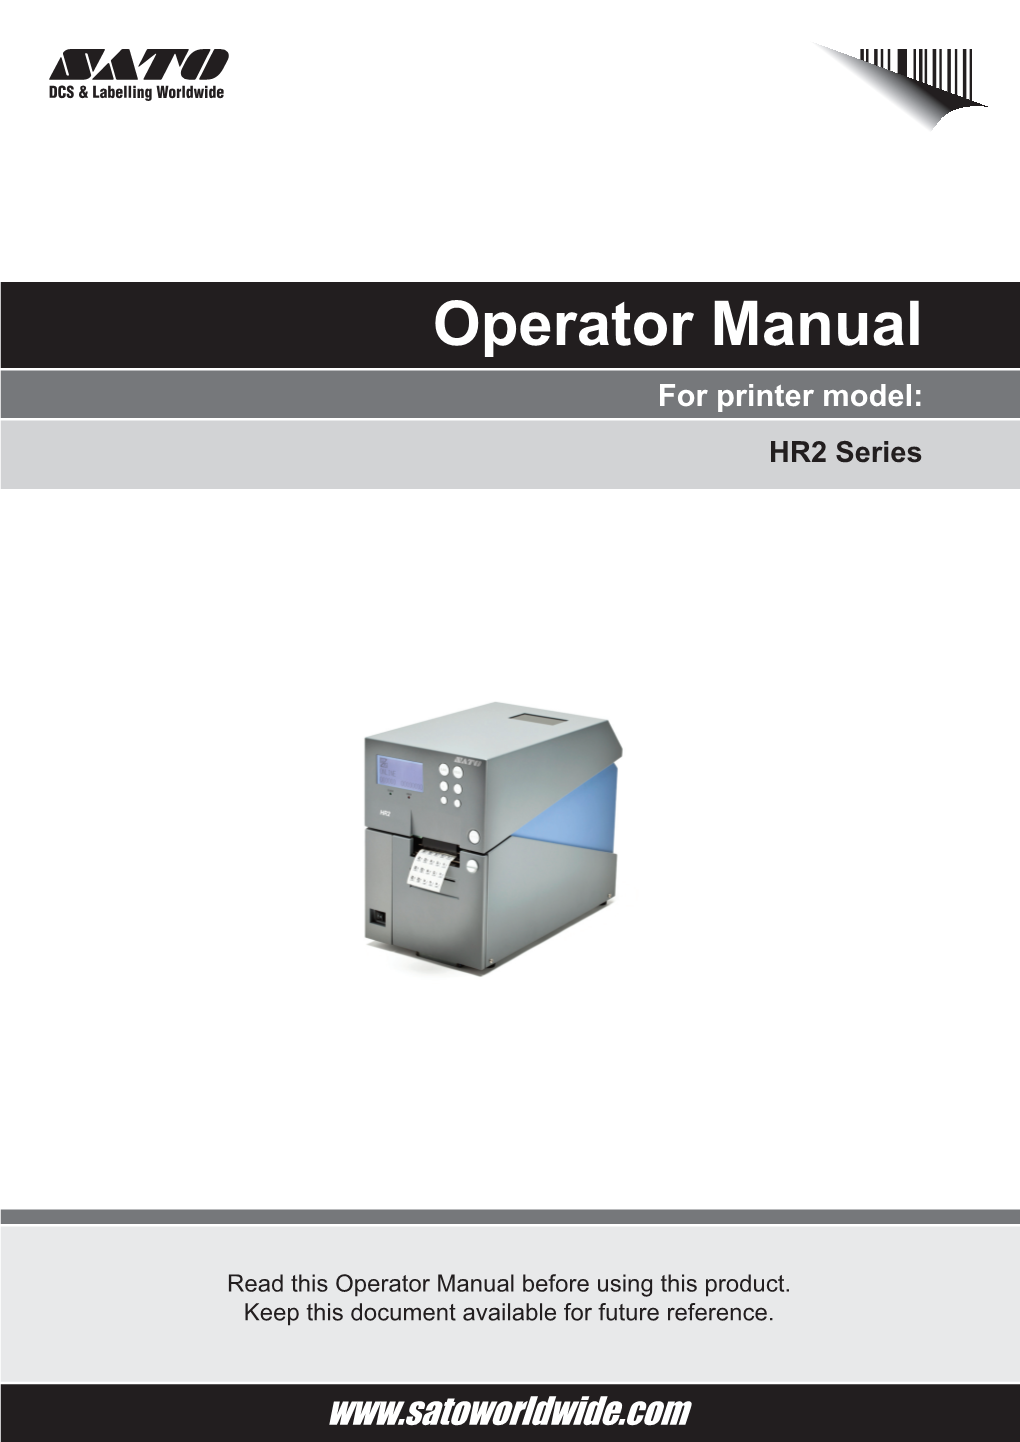 Operator Manual for Printer Model: HR2 Series